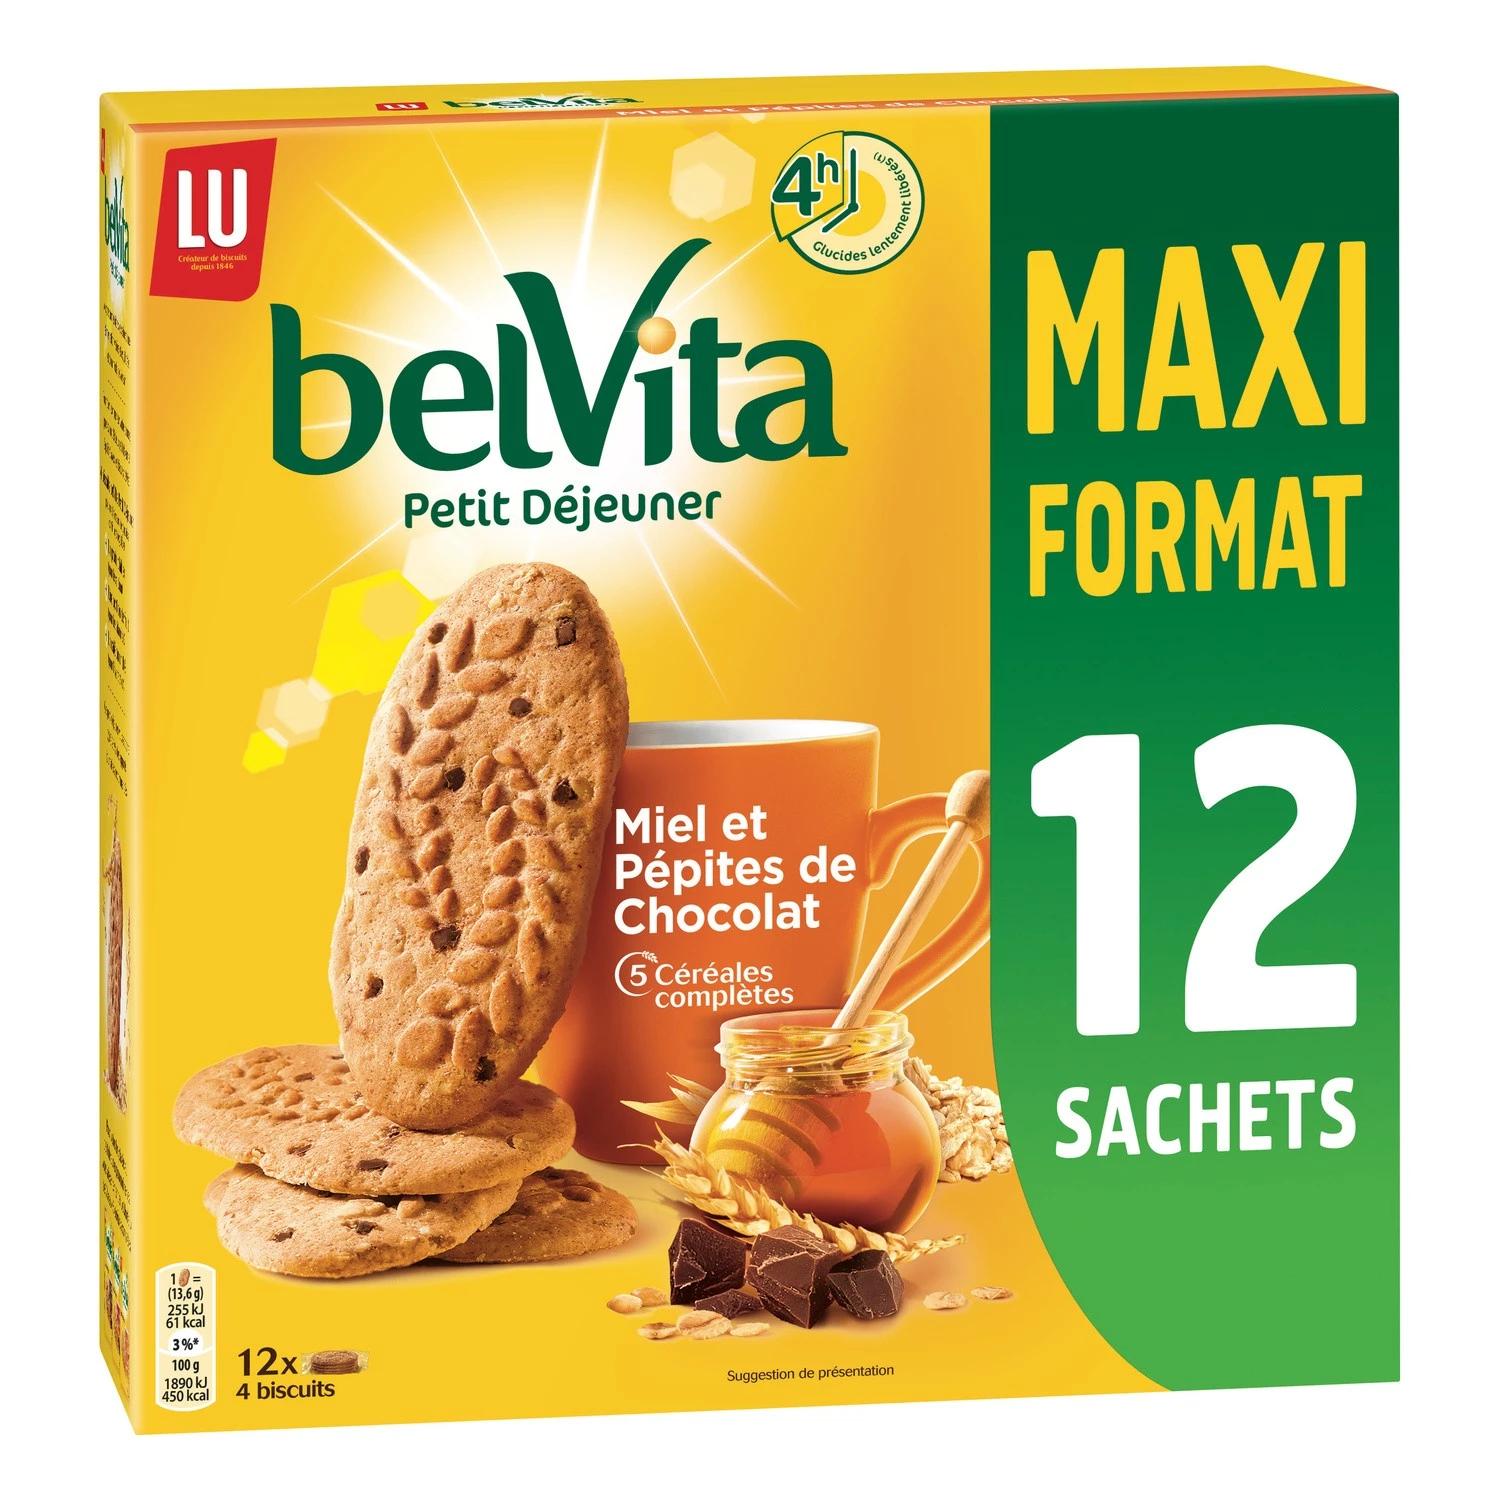 Печенье для завтрака с медом и шоколадом 650 г - BELVITA